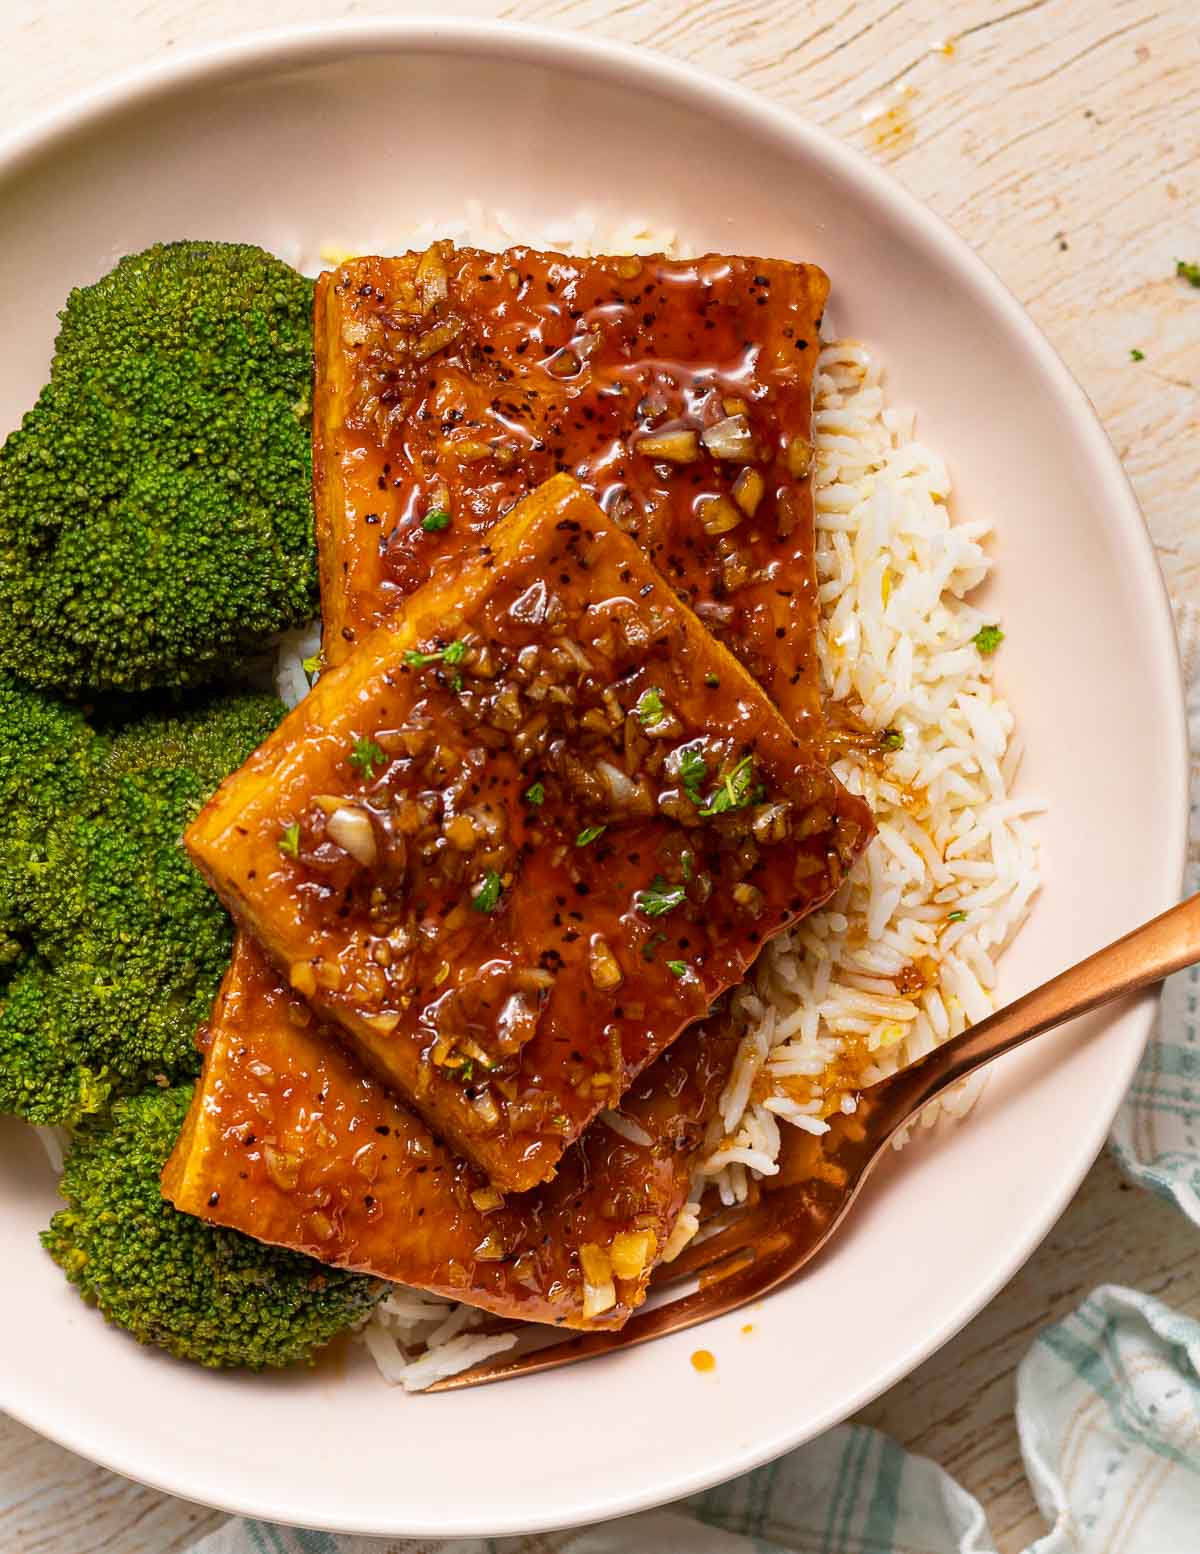 Vegan tofu dish with broccoli.